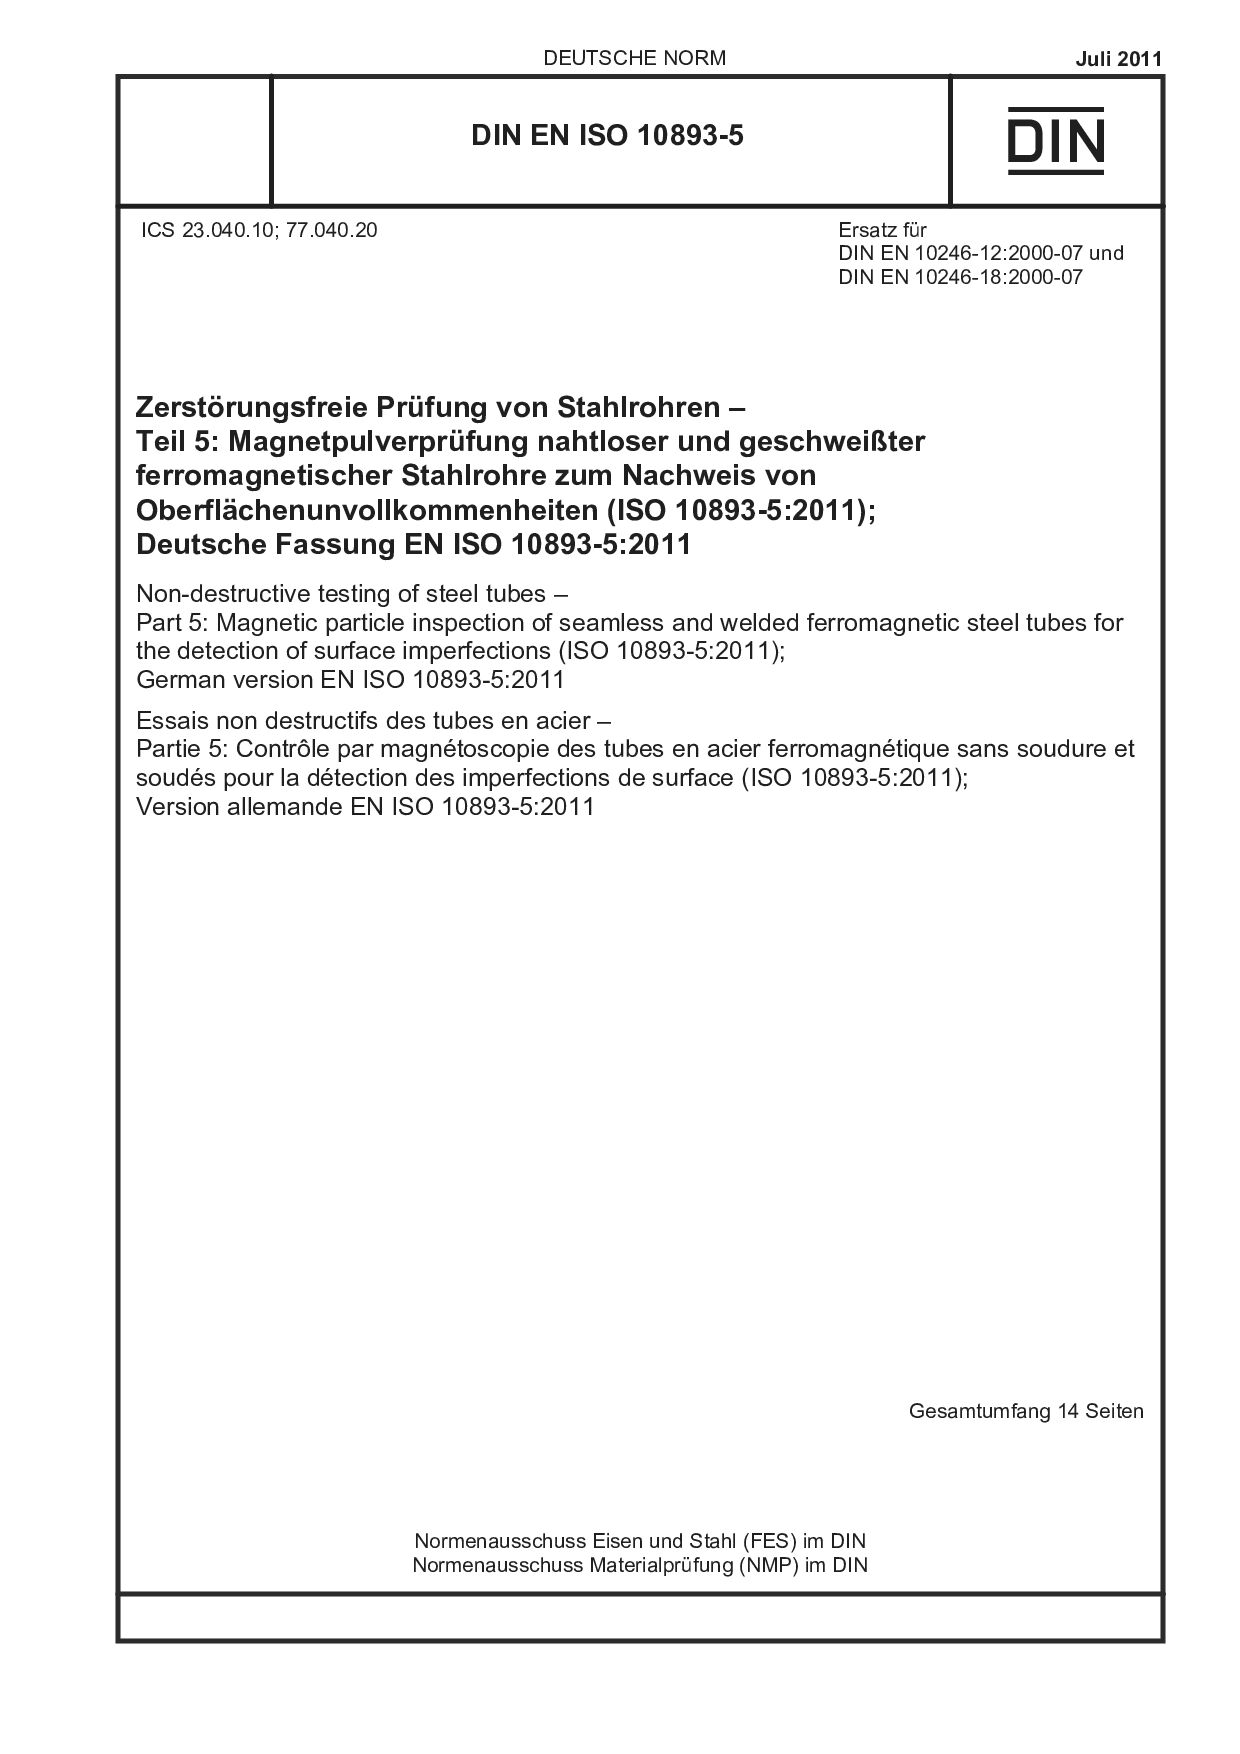 DIN EN ISO 10893-5:2011封面图